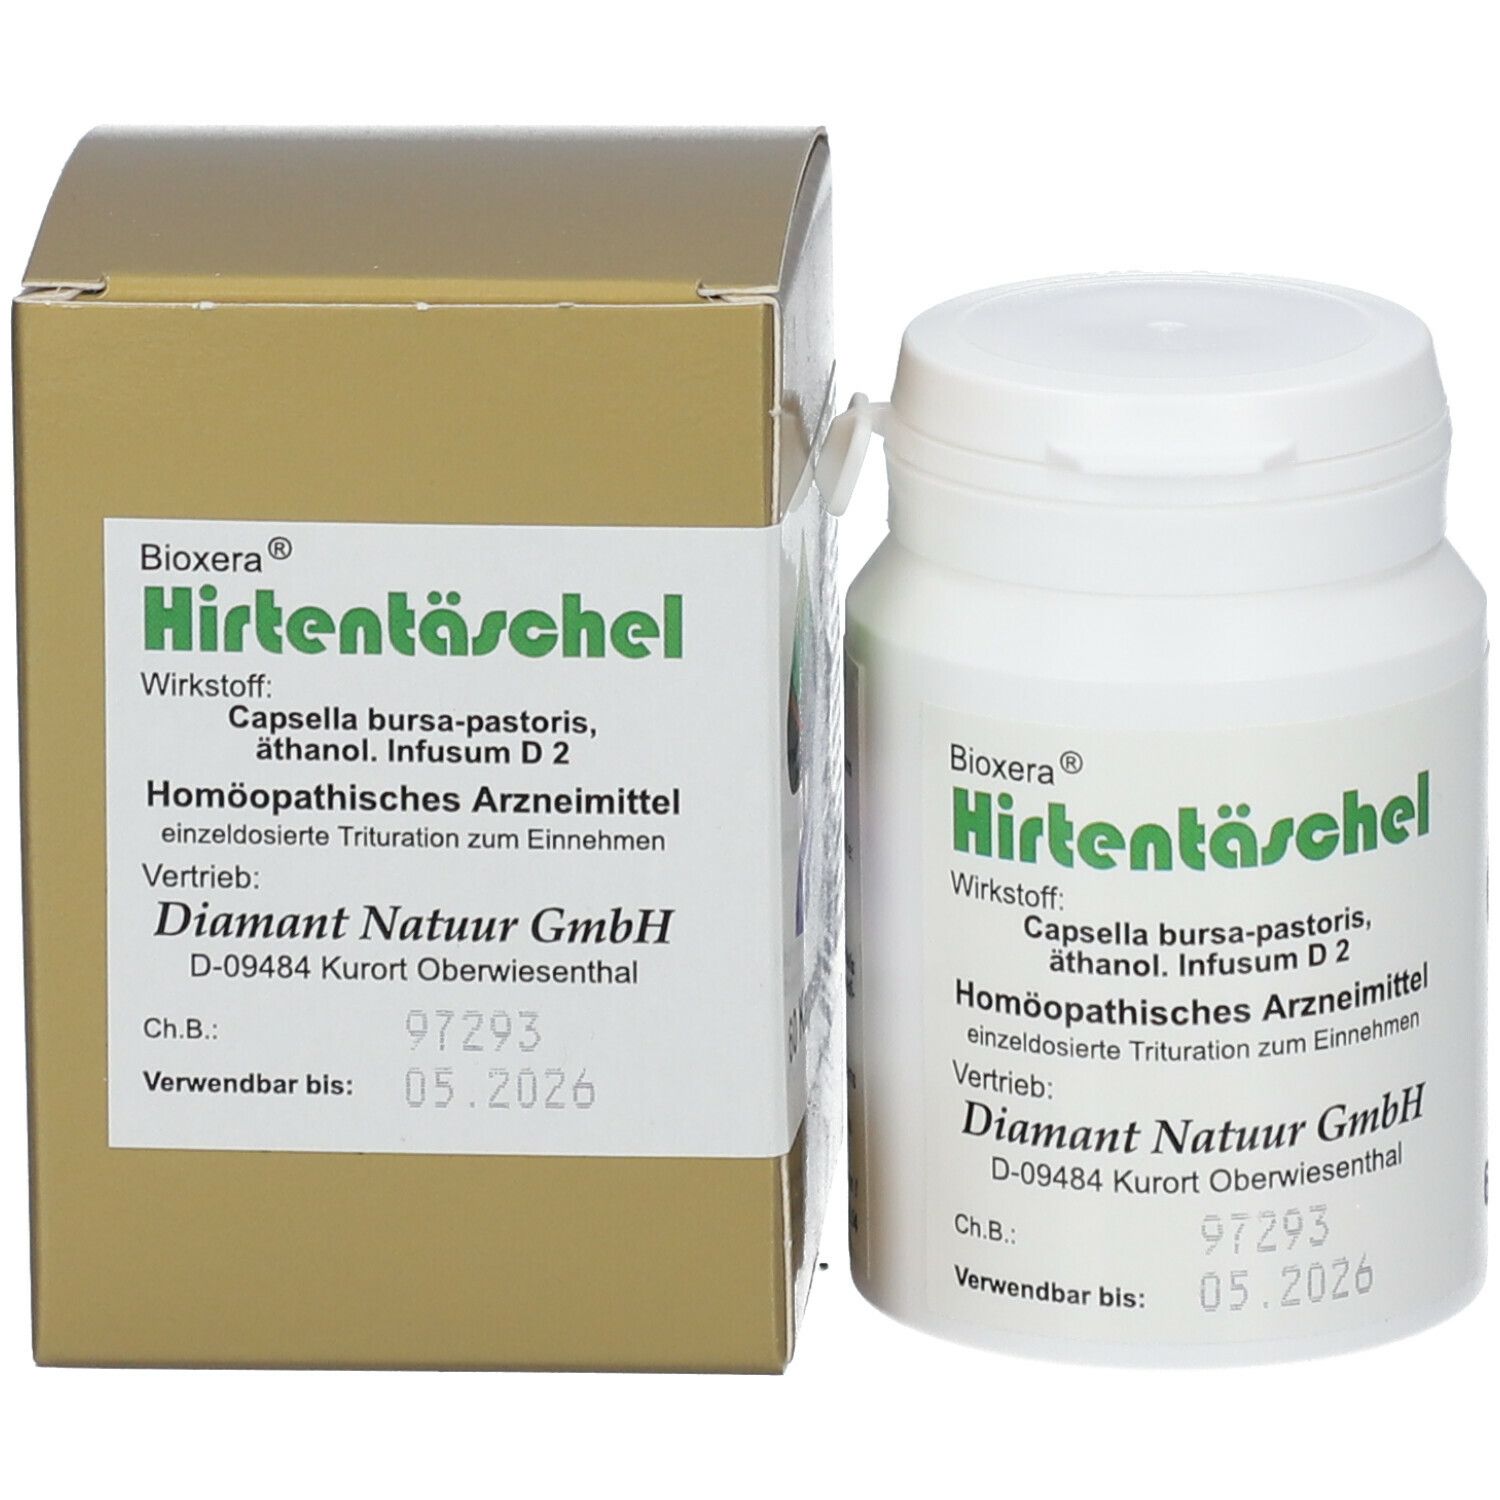 Bioxera® Hirtentaeschel